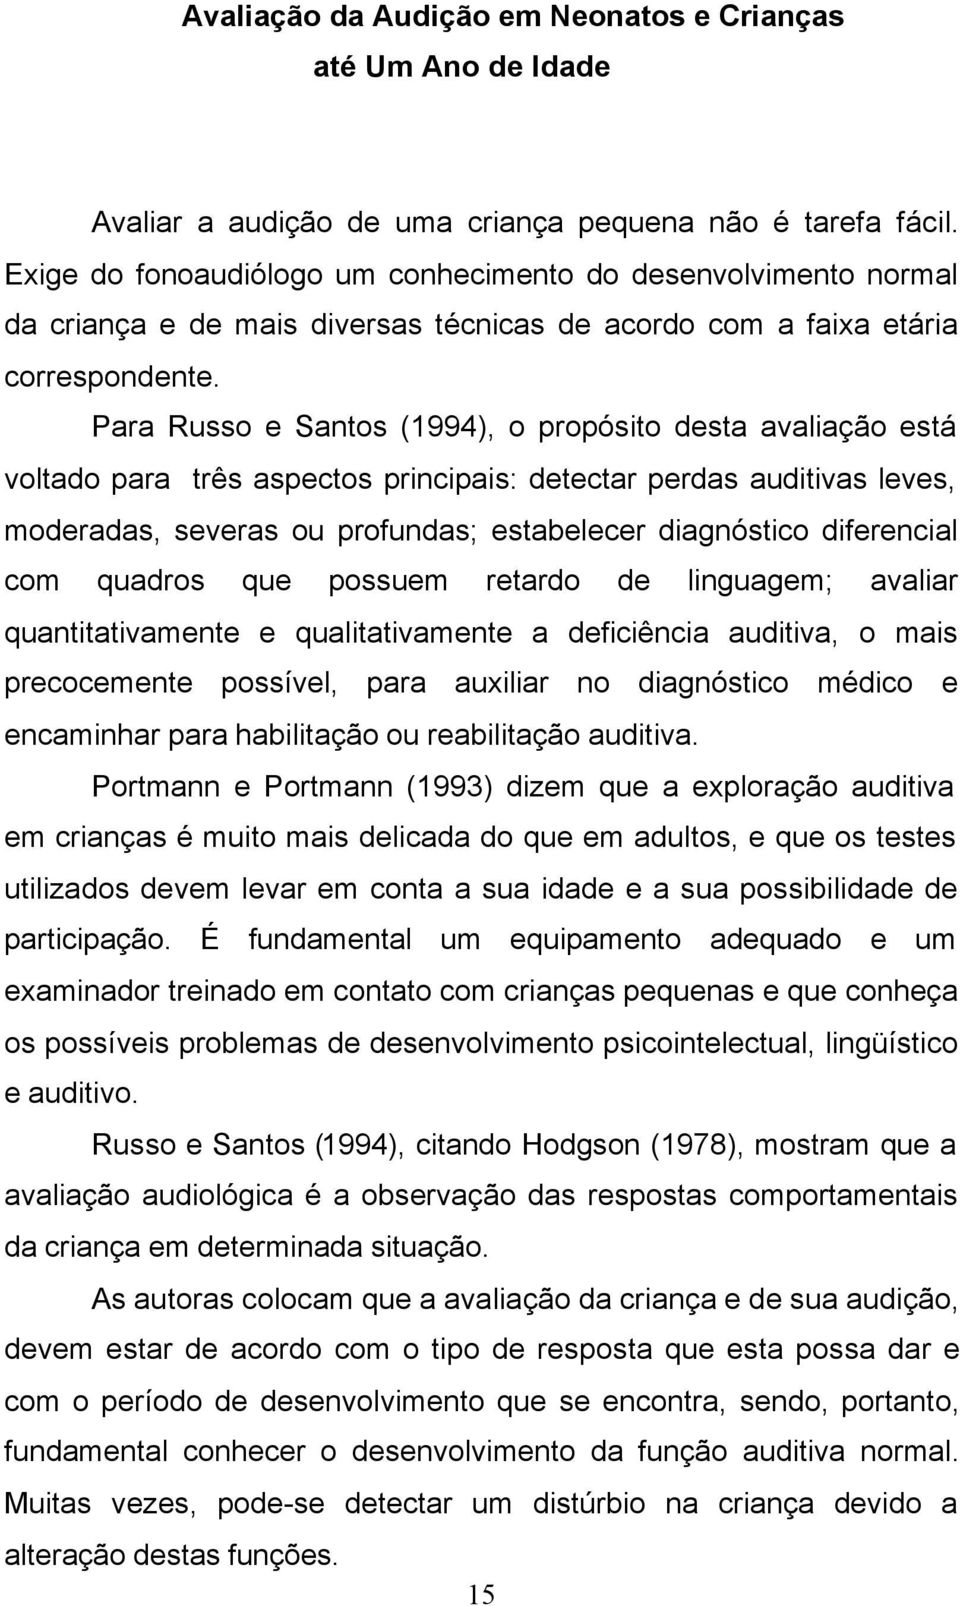 Para Russo e Santos (1994), o propósito desta avaliação está voltado para três aspectos principais: detectar perdas auditivas leves, moderadas, severas ou profundas; estabelecer diagnóstico